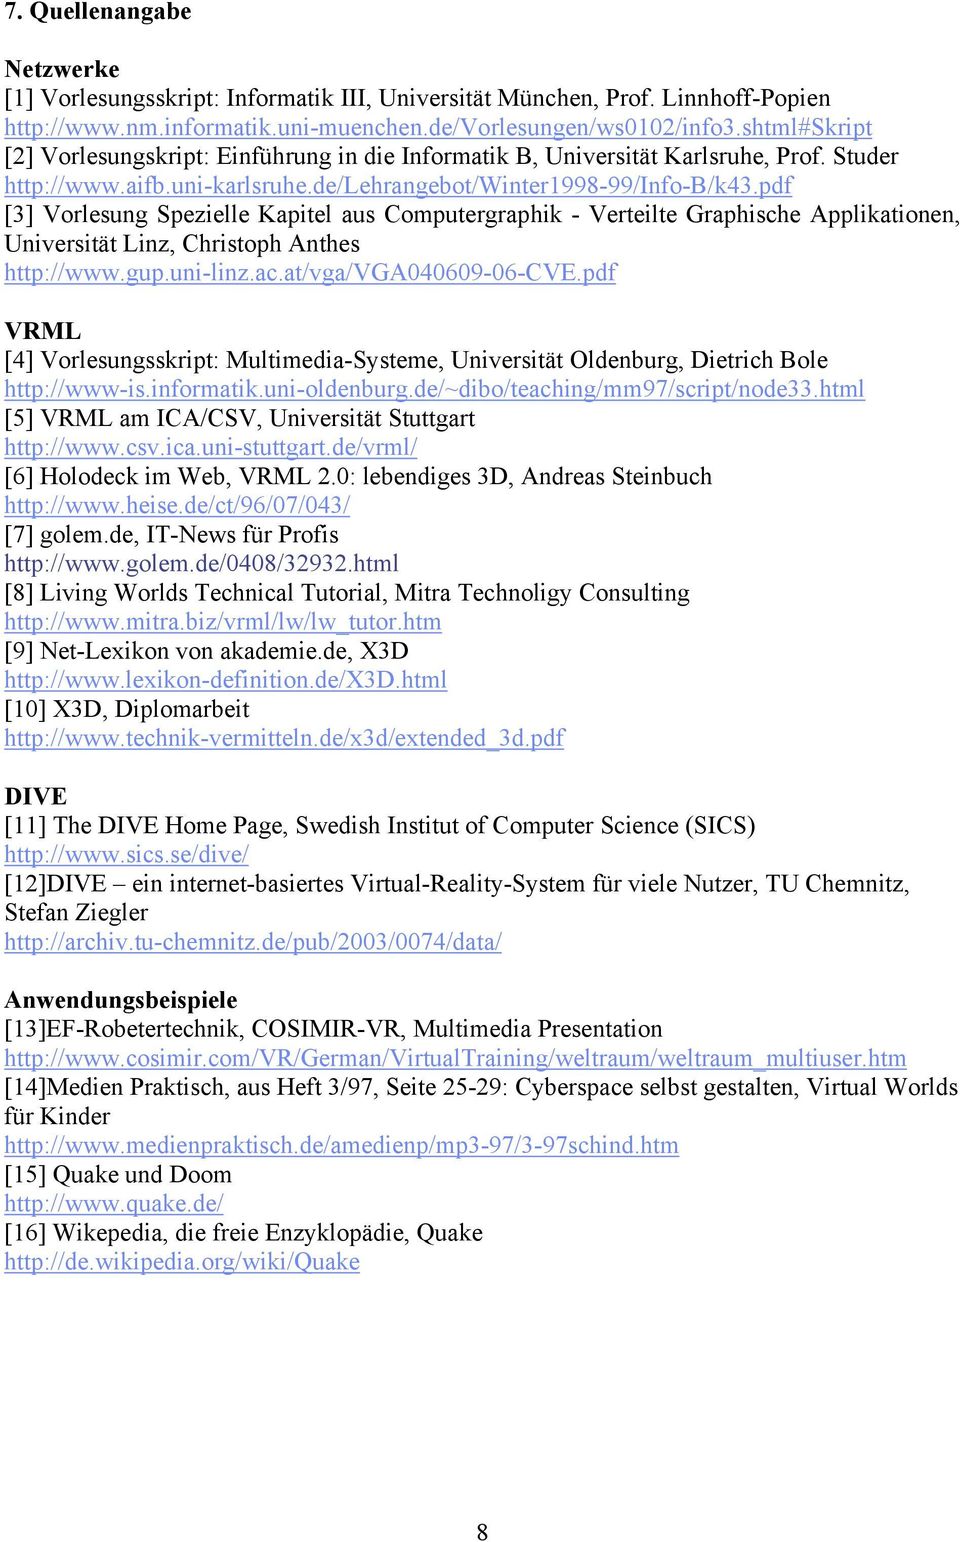 pdf [3] Vorlesung Spezielle Kapitel aus Computergraphik - Verteilte Graphische Applikationen, Universität Linz, Christoph Anthes http://www.gup.uni-linz.ac.at/vga/vga040609-06-cve.